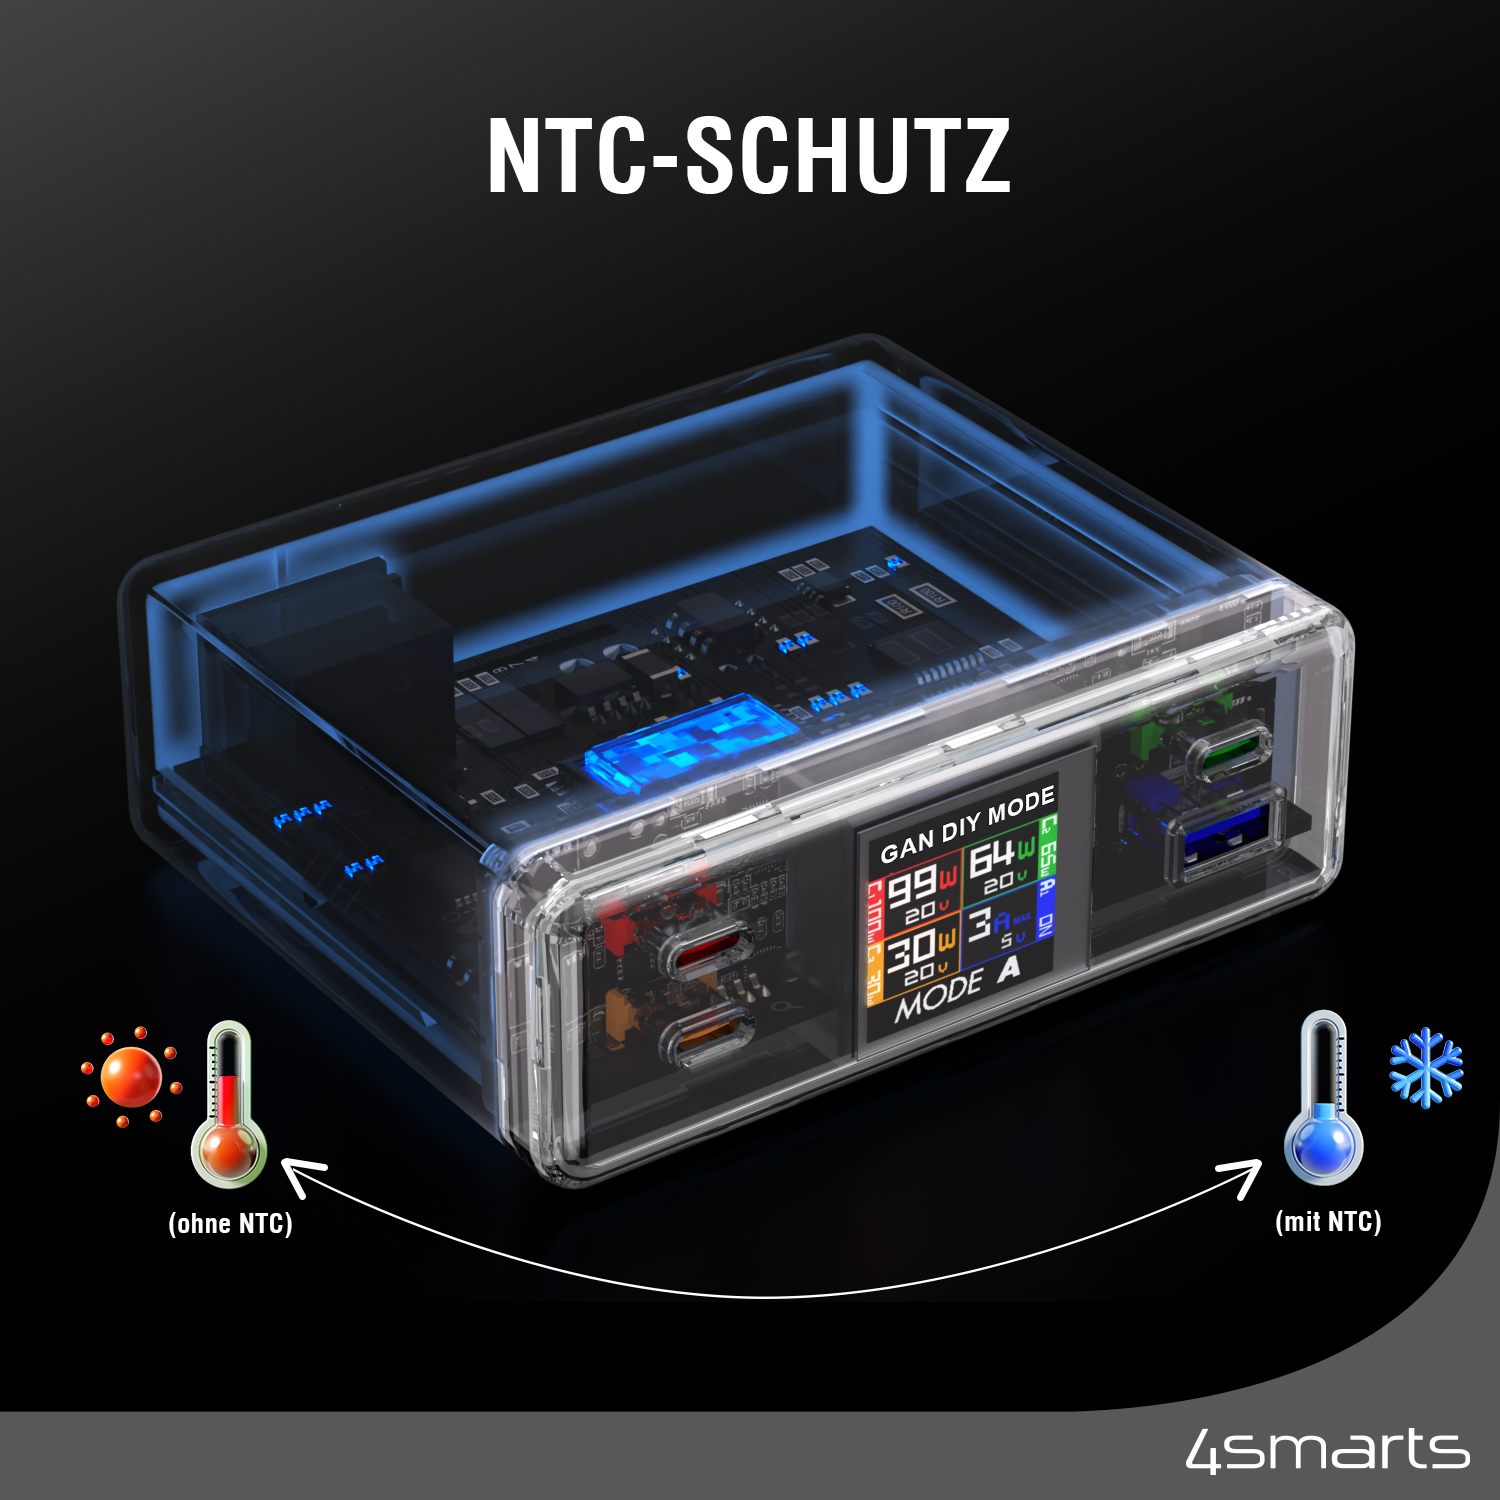 Der 4smarts Desk Charger Lucid GaN DIY MODE mit 210W ist mit einem NTC-Schutz ausgestattet.